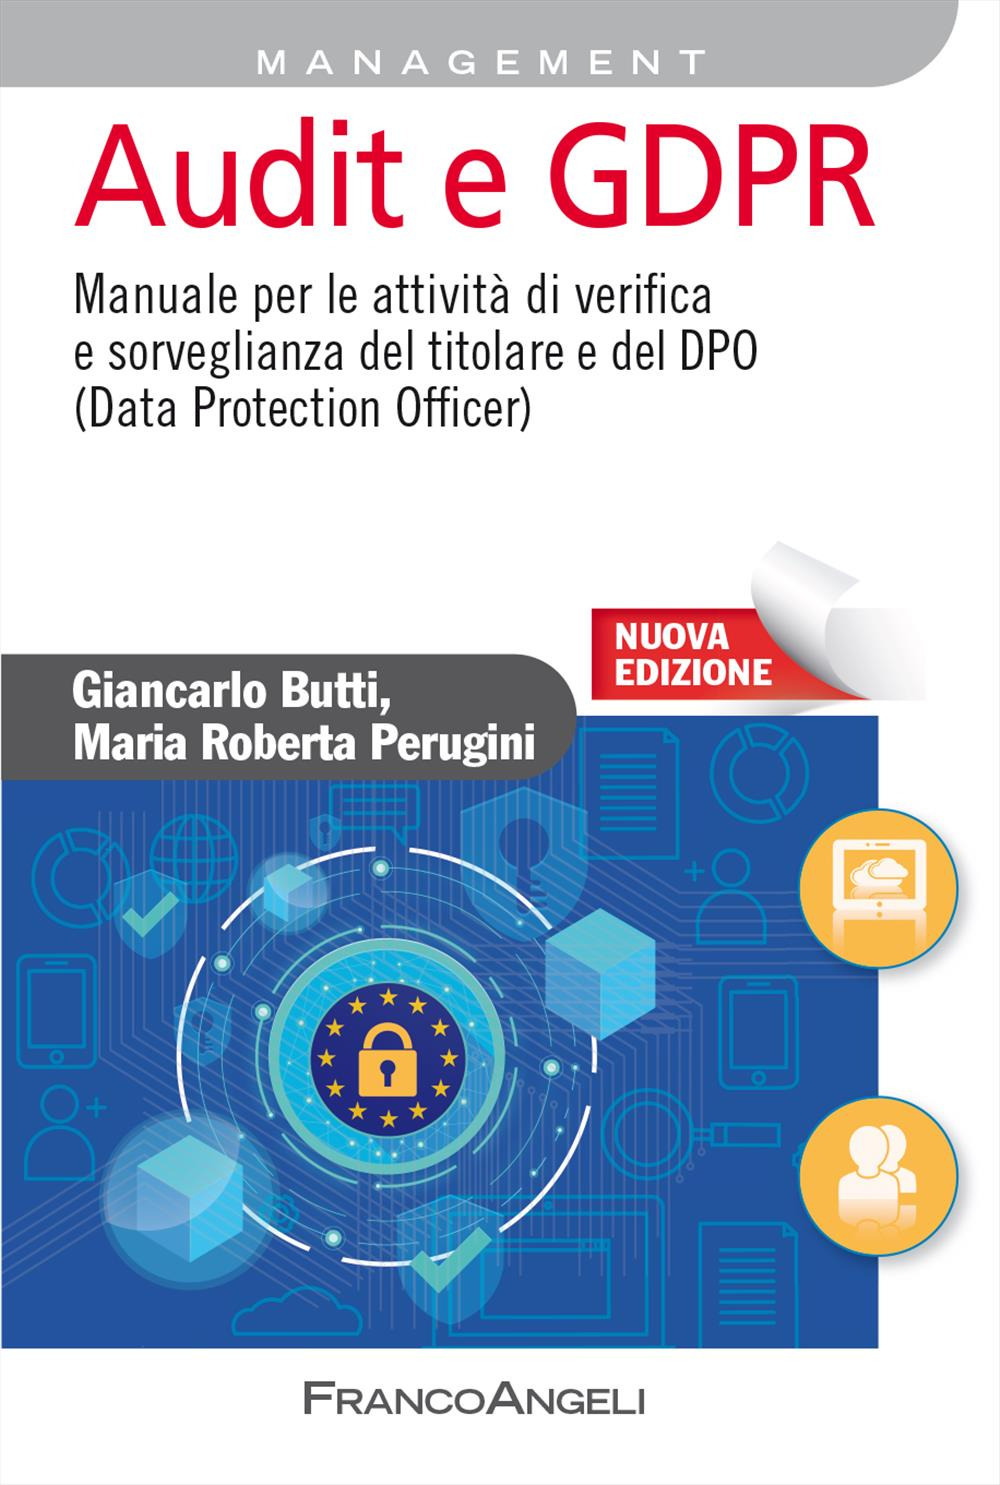 Audit e GDPR. Manuale per le attività di verifica e sorveglianza del titolare e del DPO (Data Protection Officer). Nuova ediz.